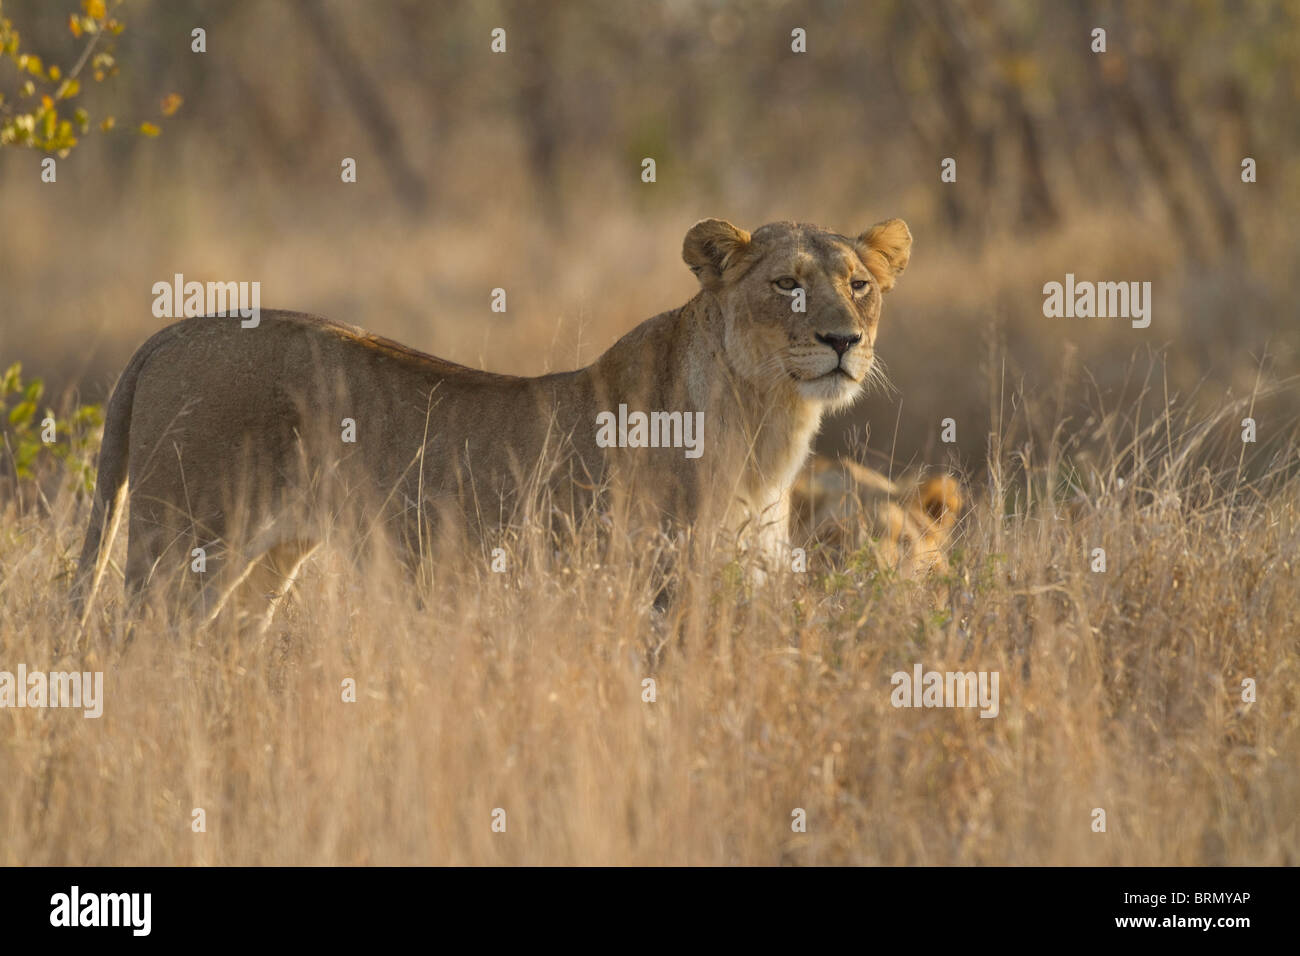 Un león de pie en una pradera en seco mirando fijamente hacia adelante Foto de stock